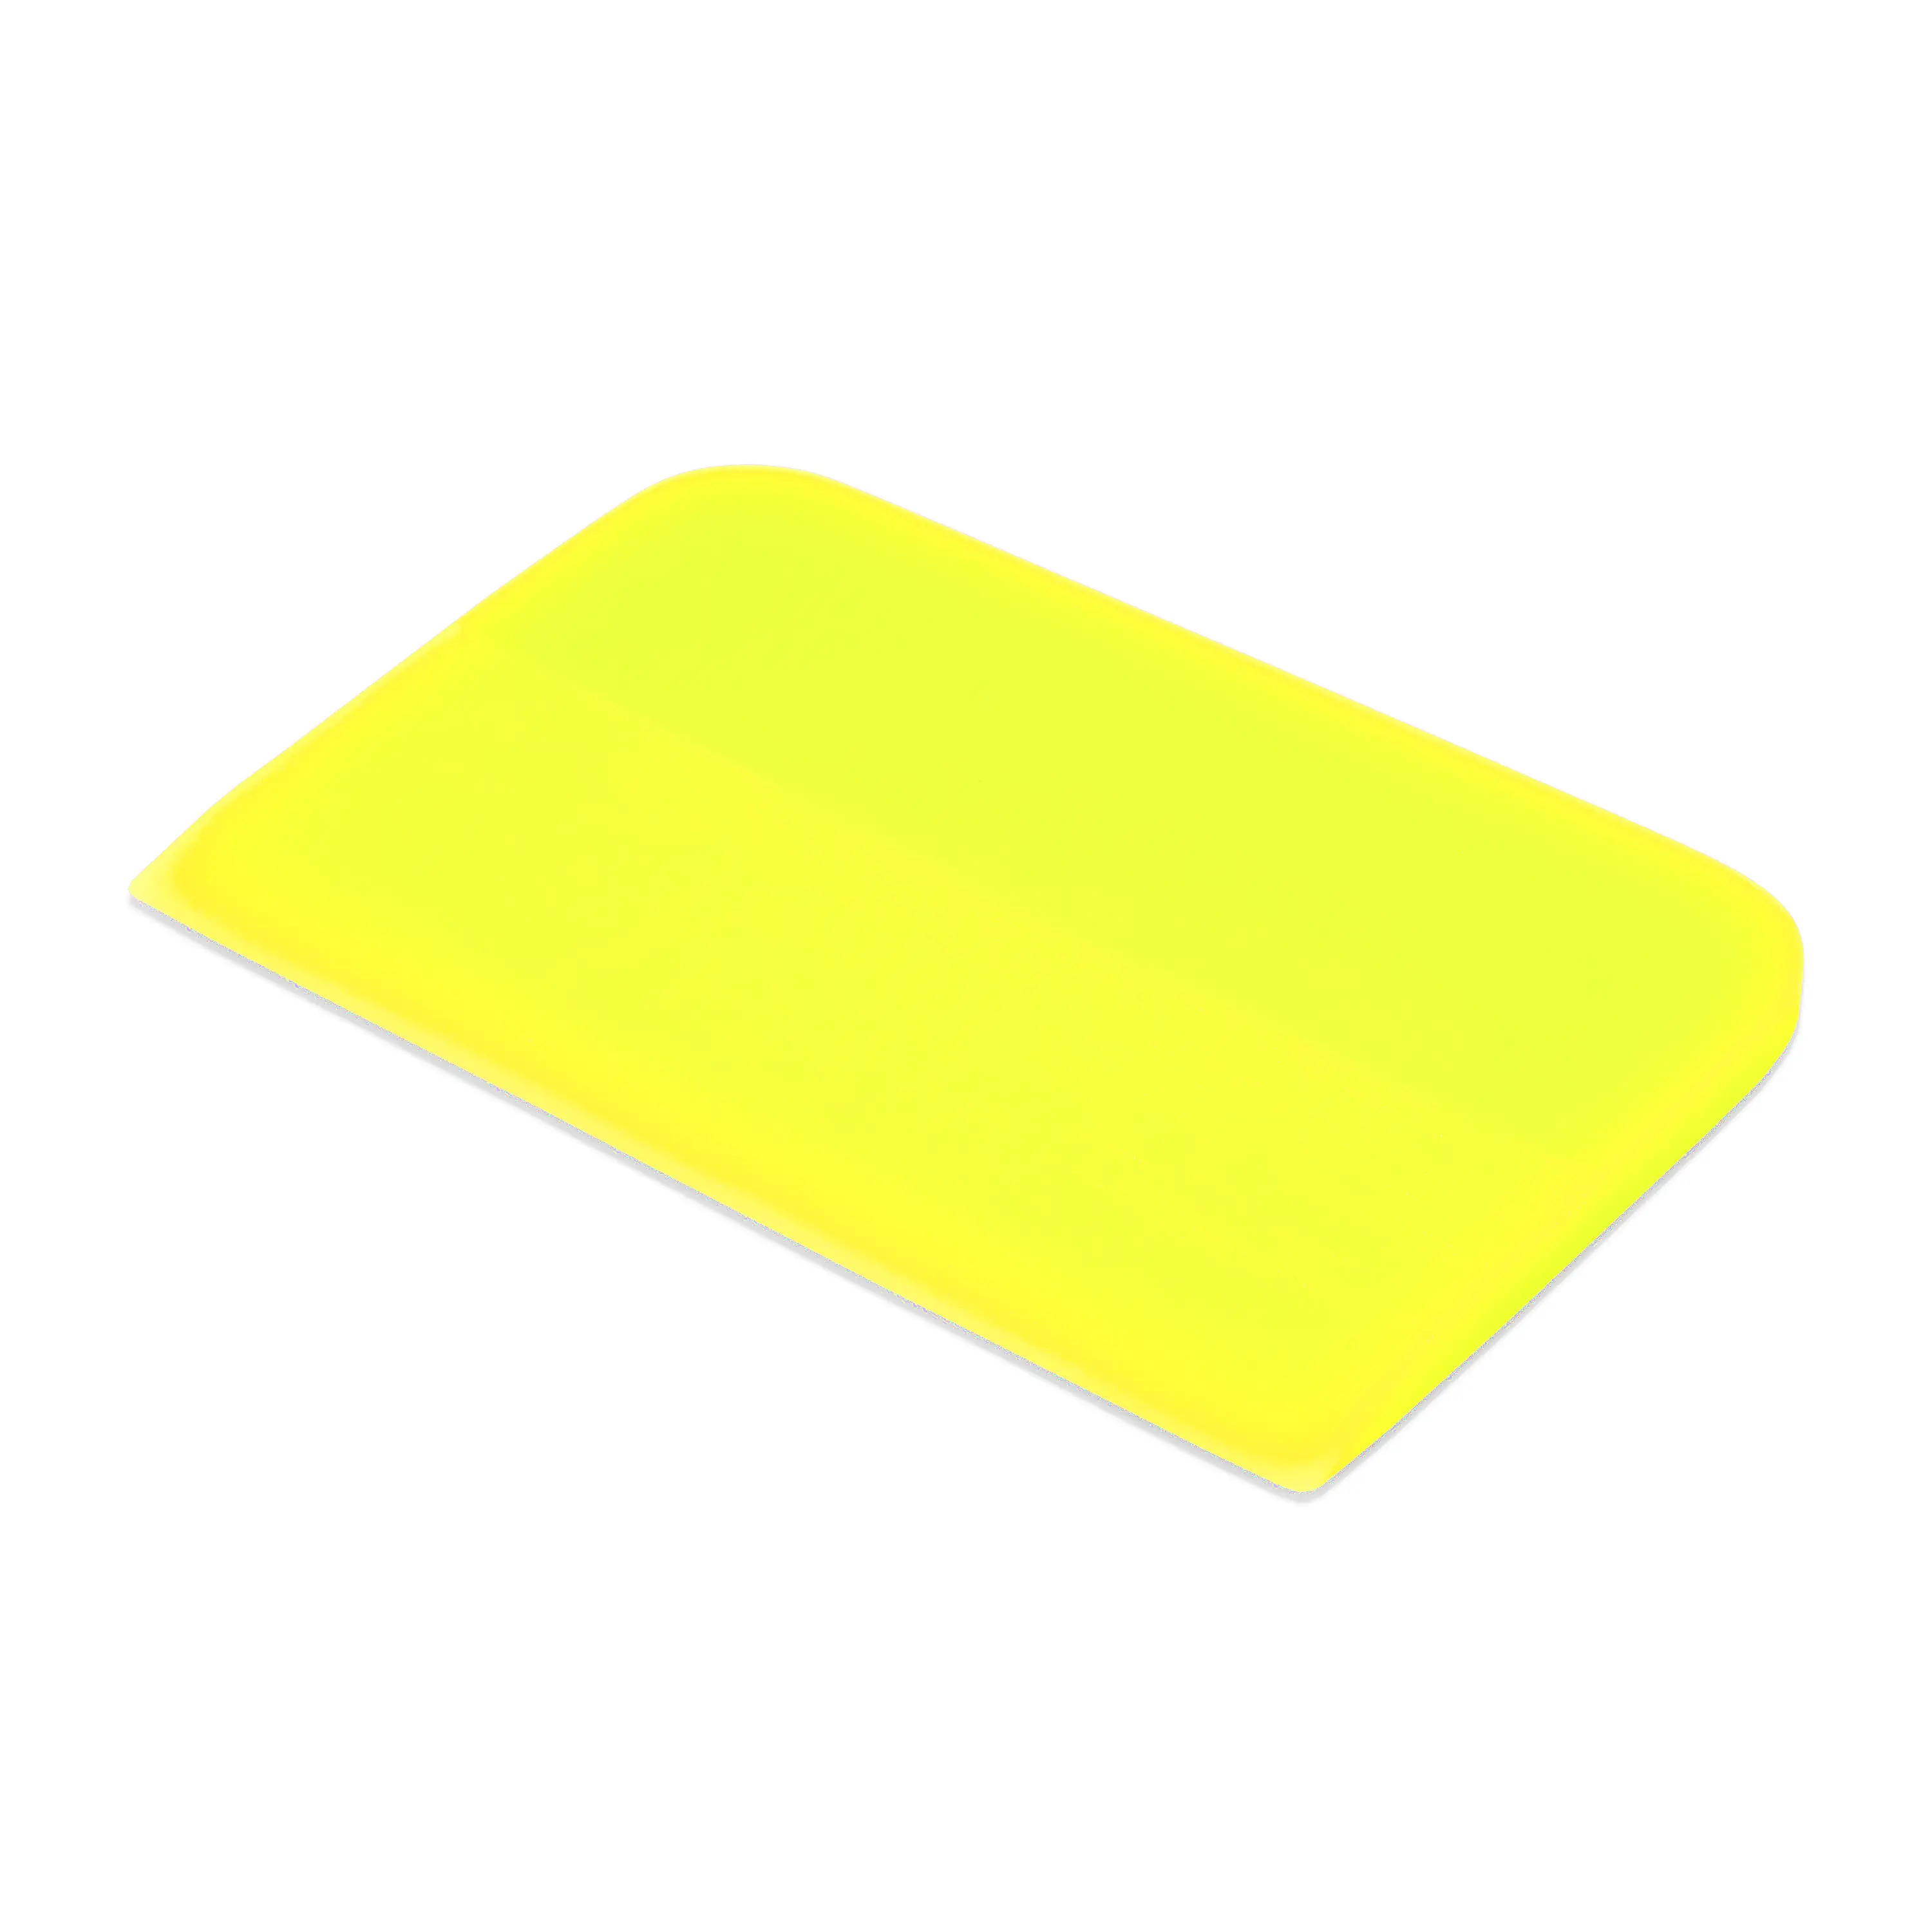 Выгонка полиуретановая желтая Juicy Slider, 0,6x12x7,5 см